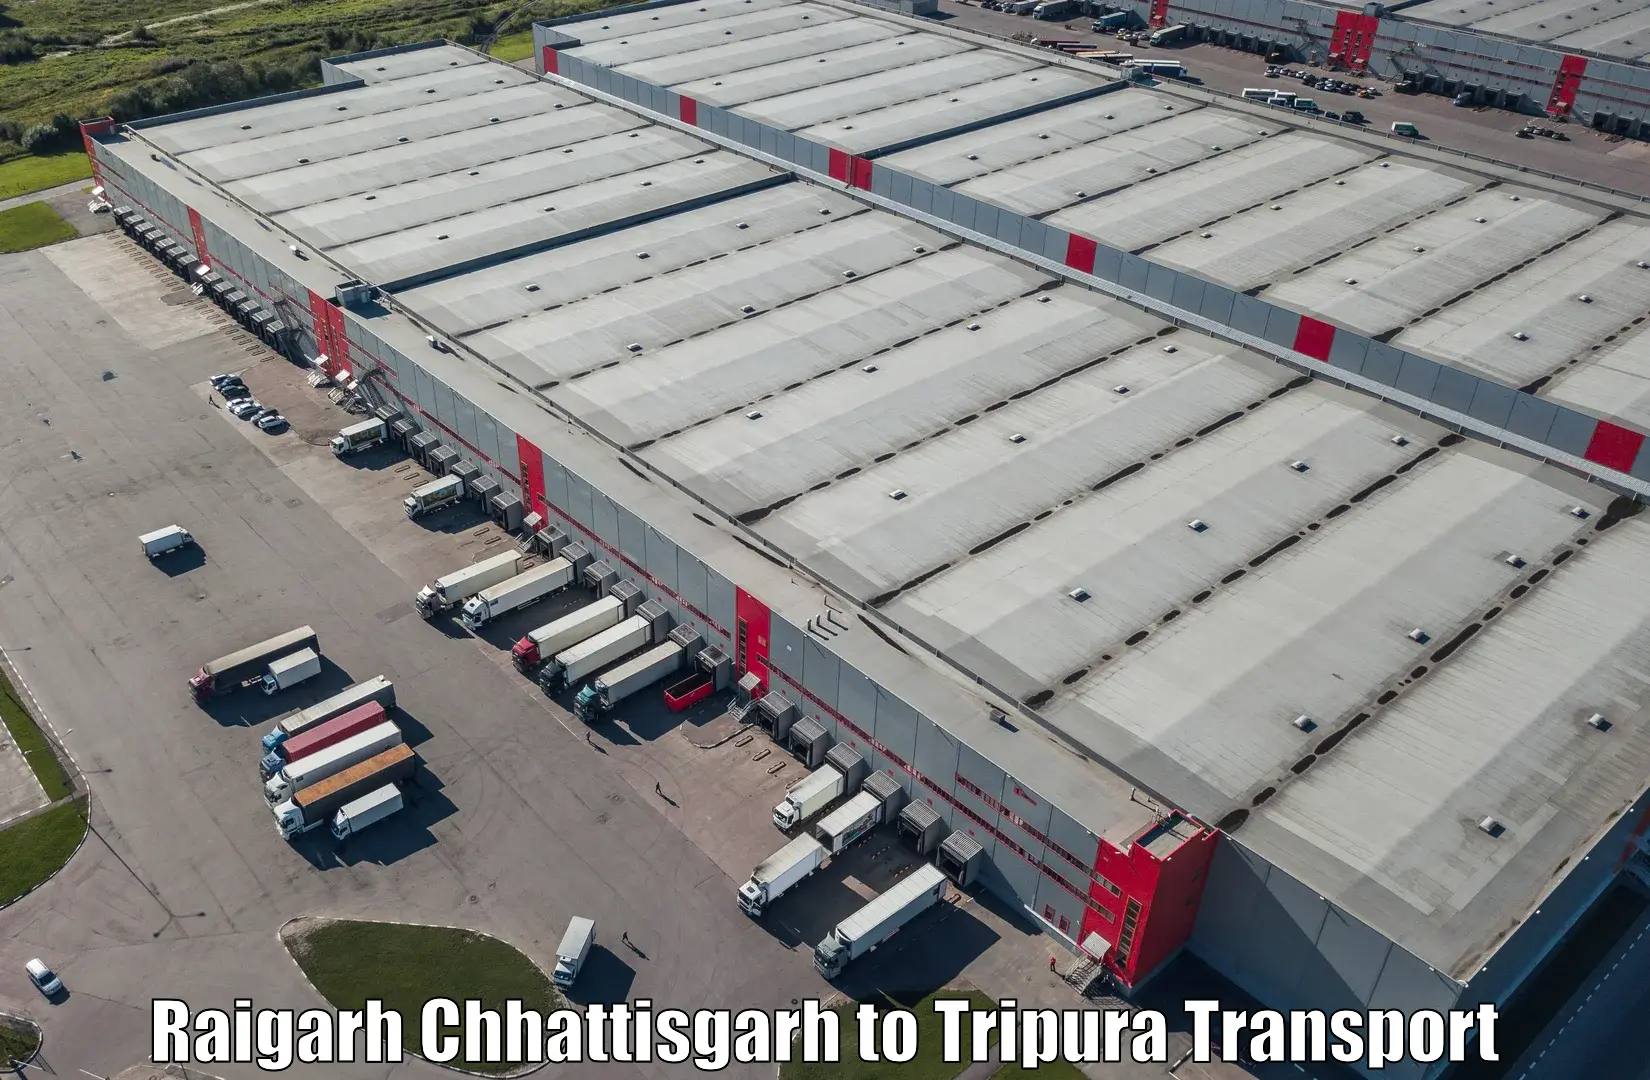 Parcel transport services Raigarh Chhattisgarh to Bishalgarh